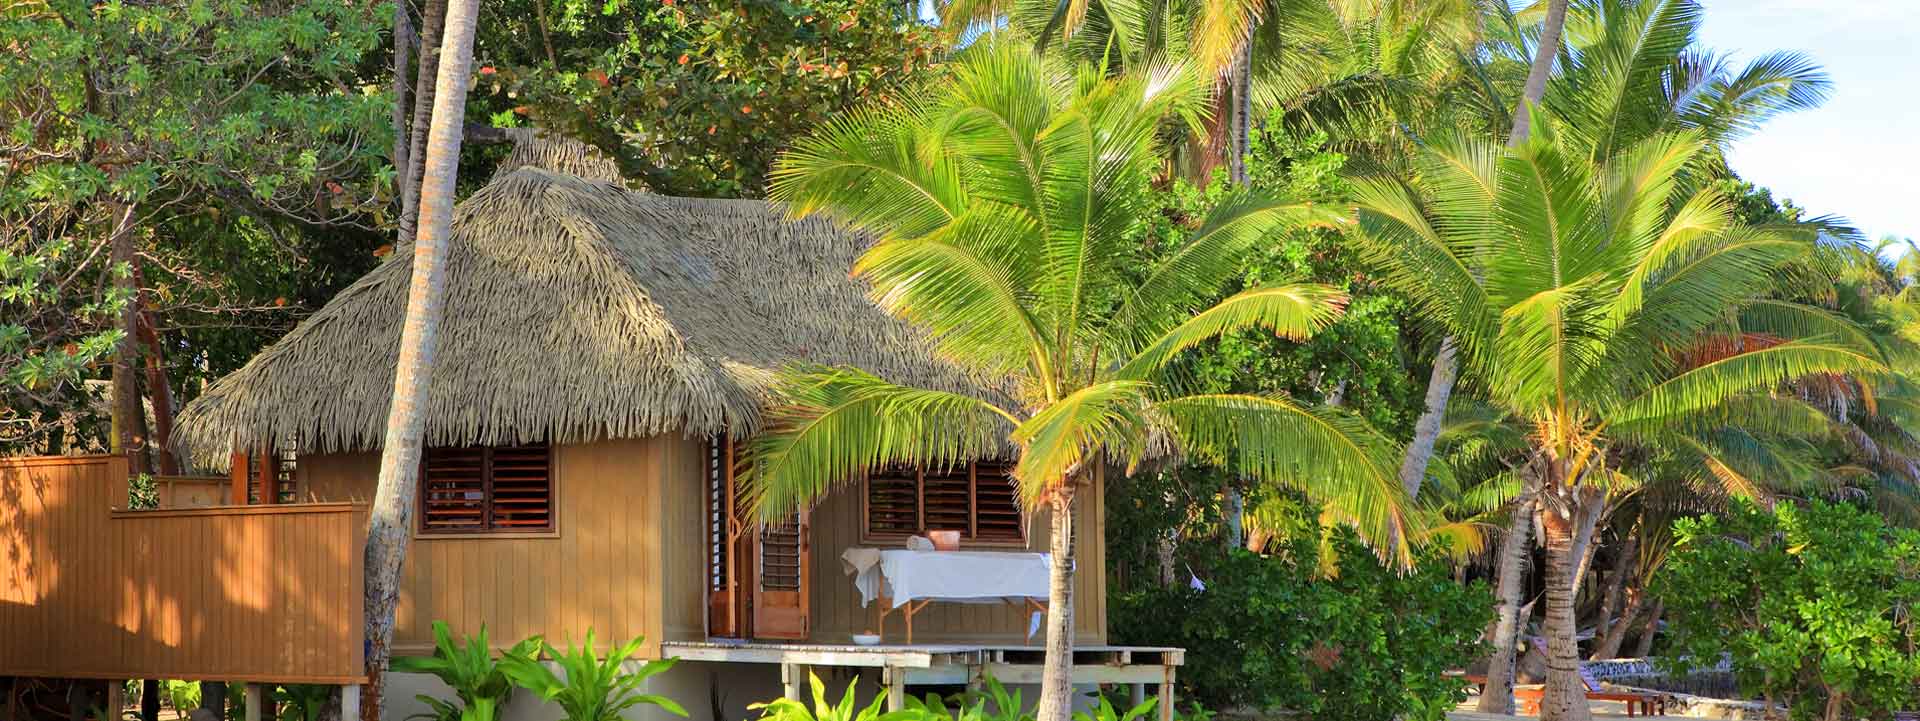 Fiji Resort Spa and Massage